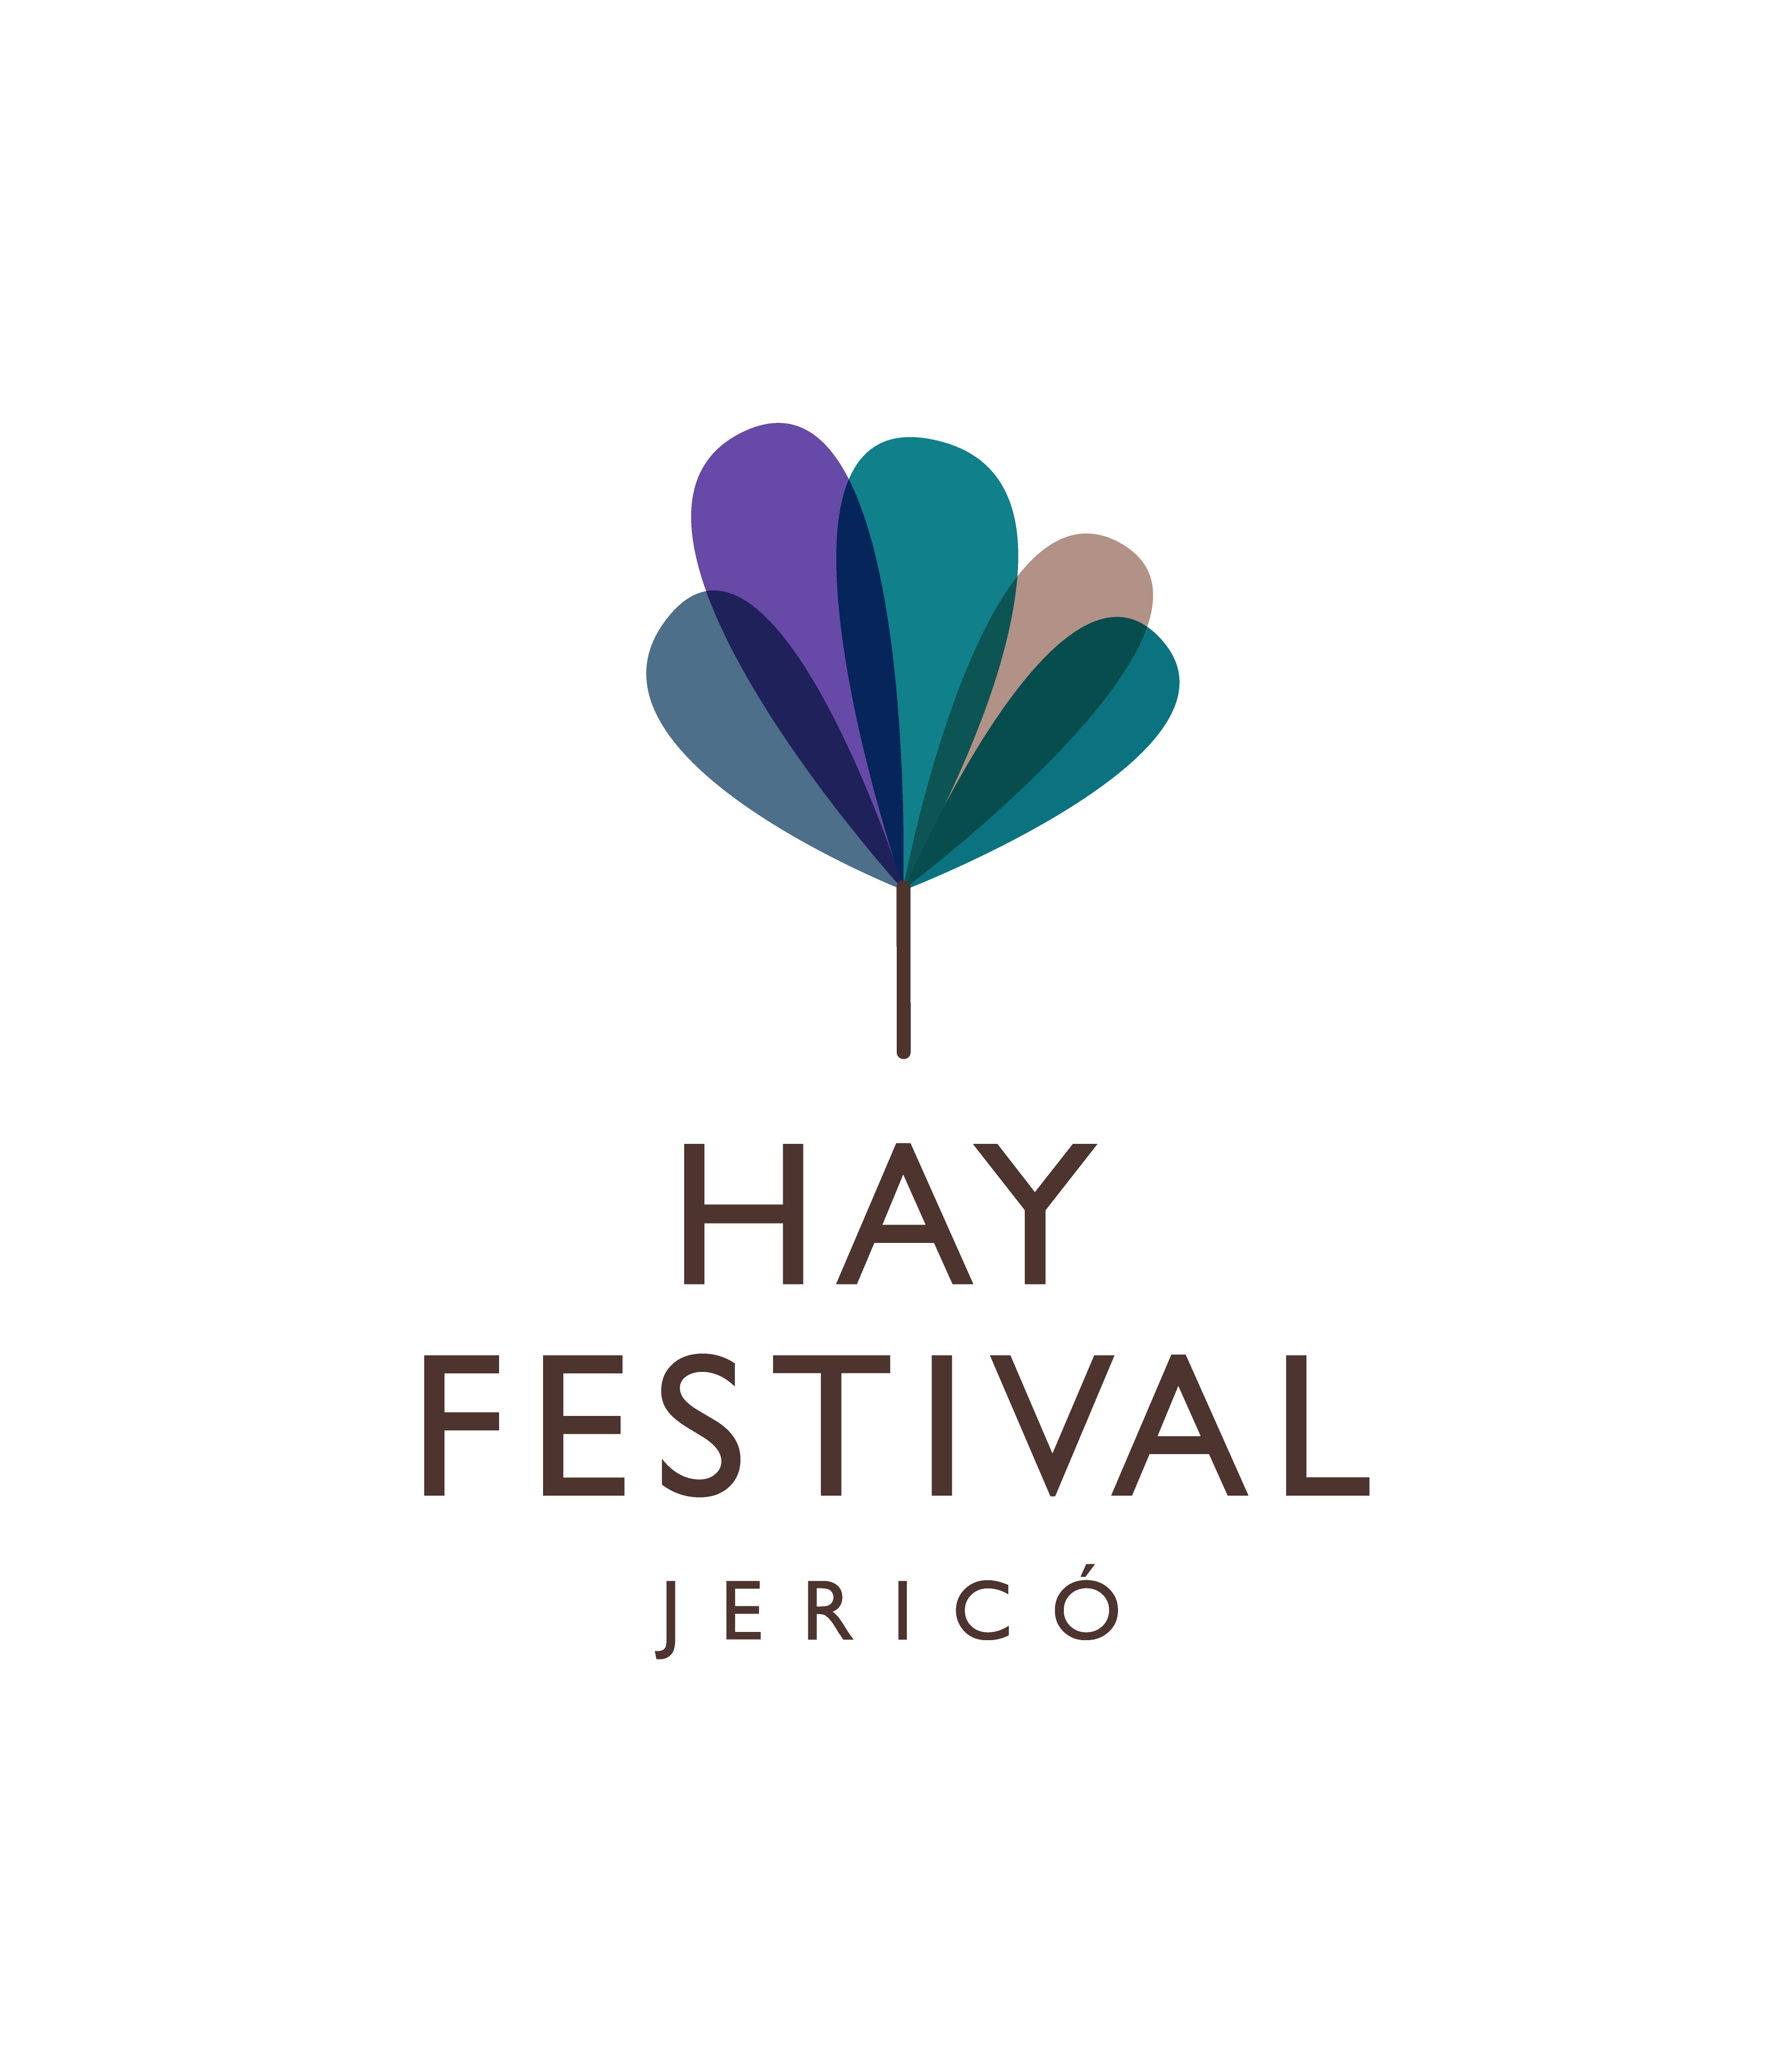 Hay Festival Jerico logo